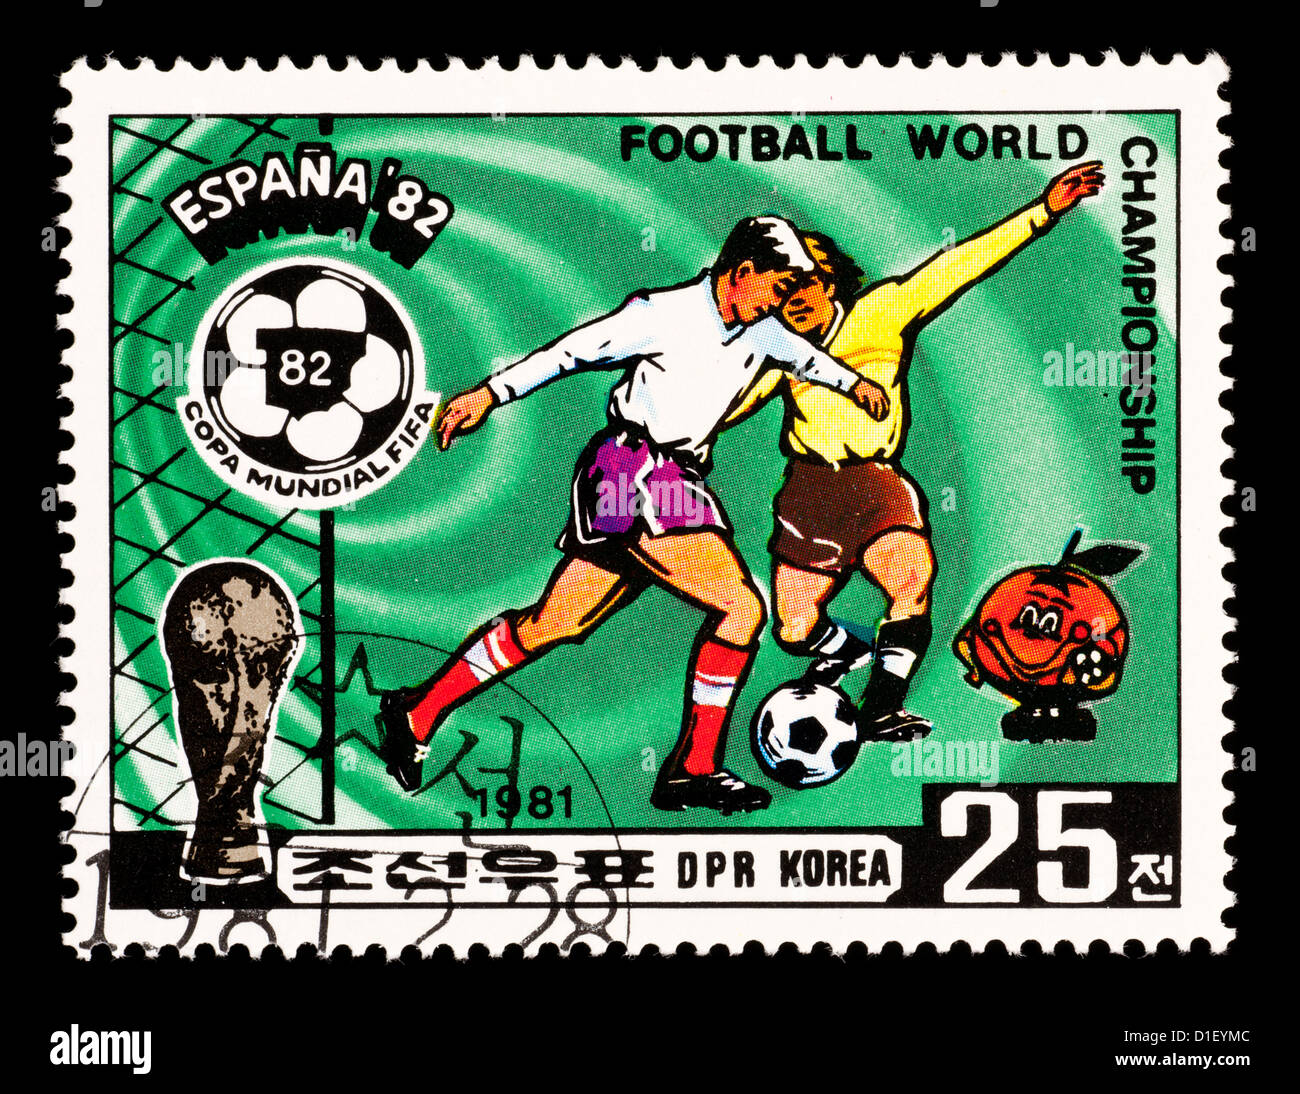 Timbre-poste à partir de la Corée du Nord représentant des joueurs de football, émis pour la Coupe du Monde 1982 en Espagne. Banque D'Images